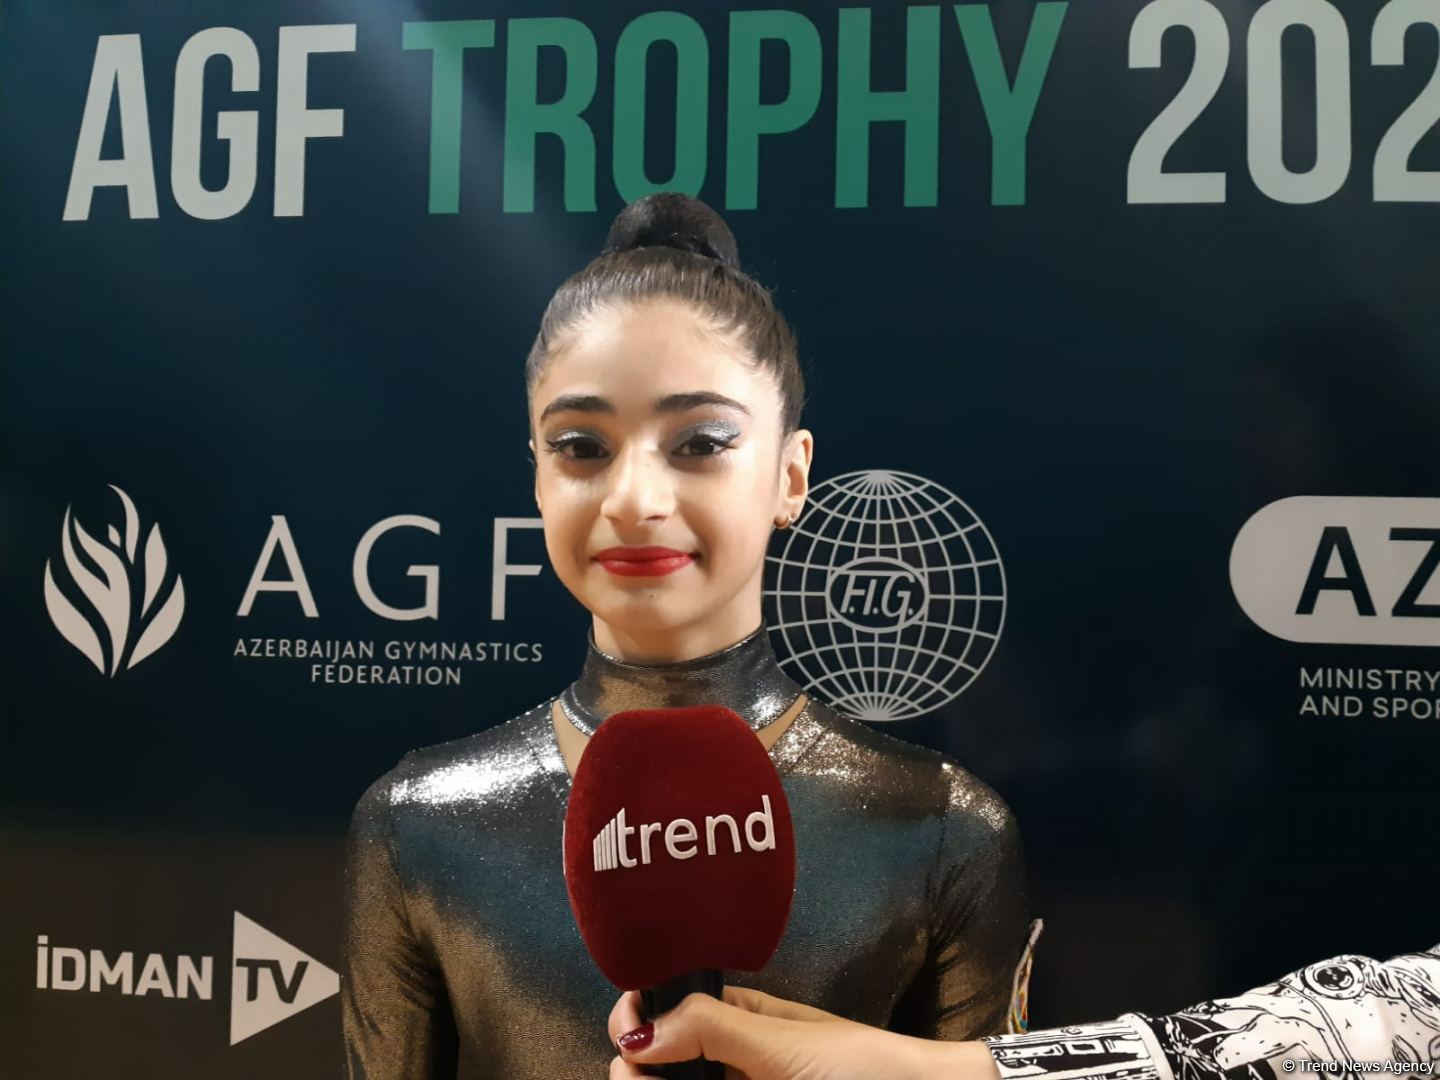 Соревнования Международного турнира AGF Trophy проходят прекрасно – юная азербайджанская гимнастка